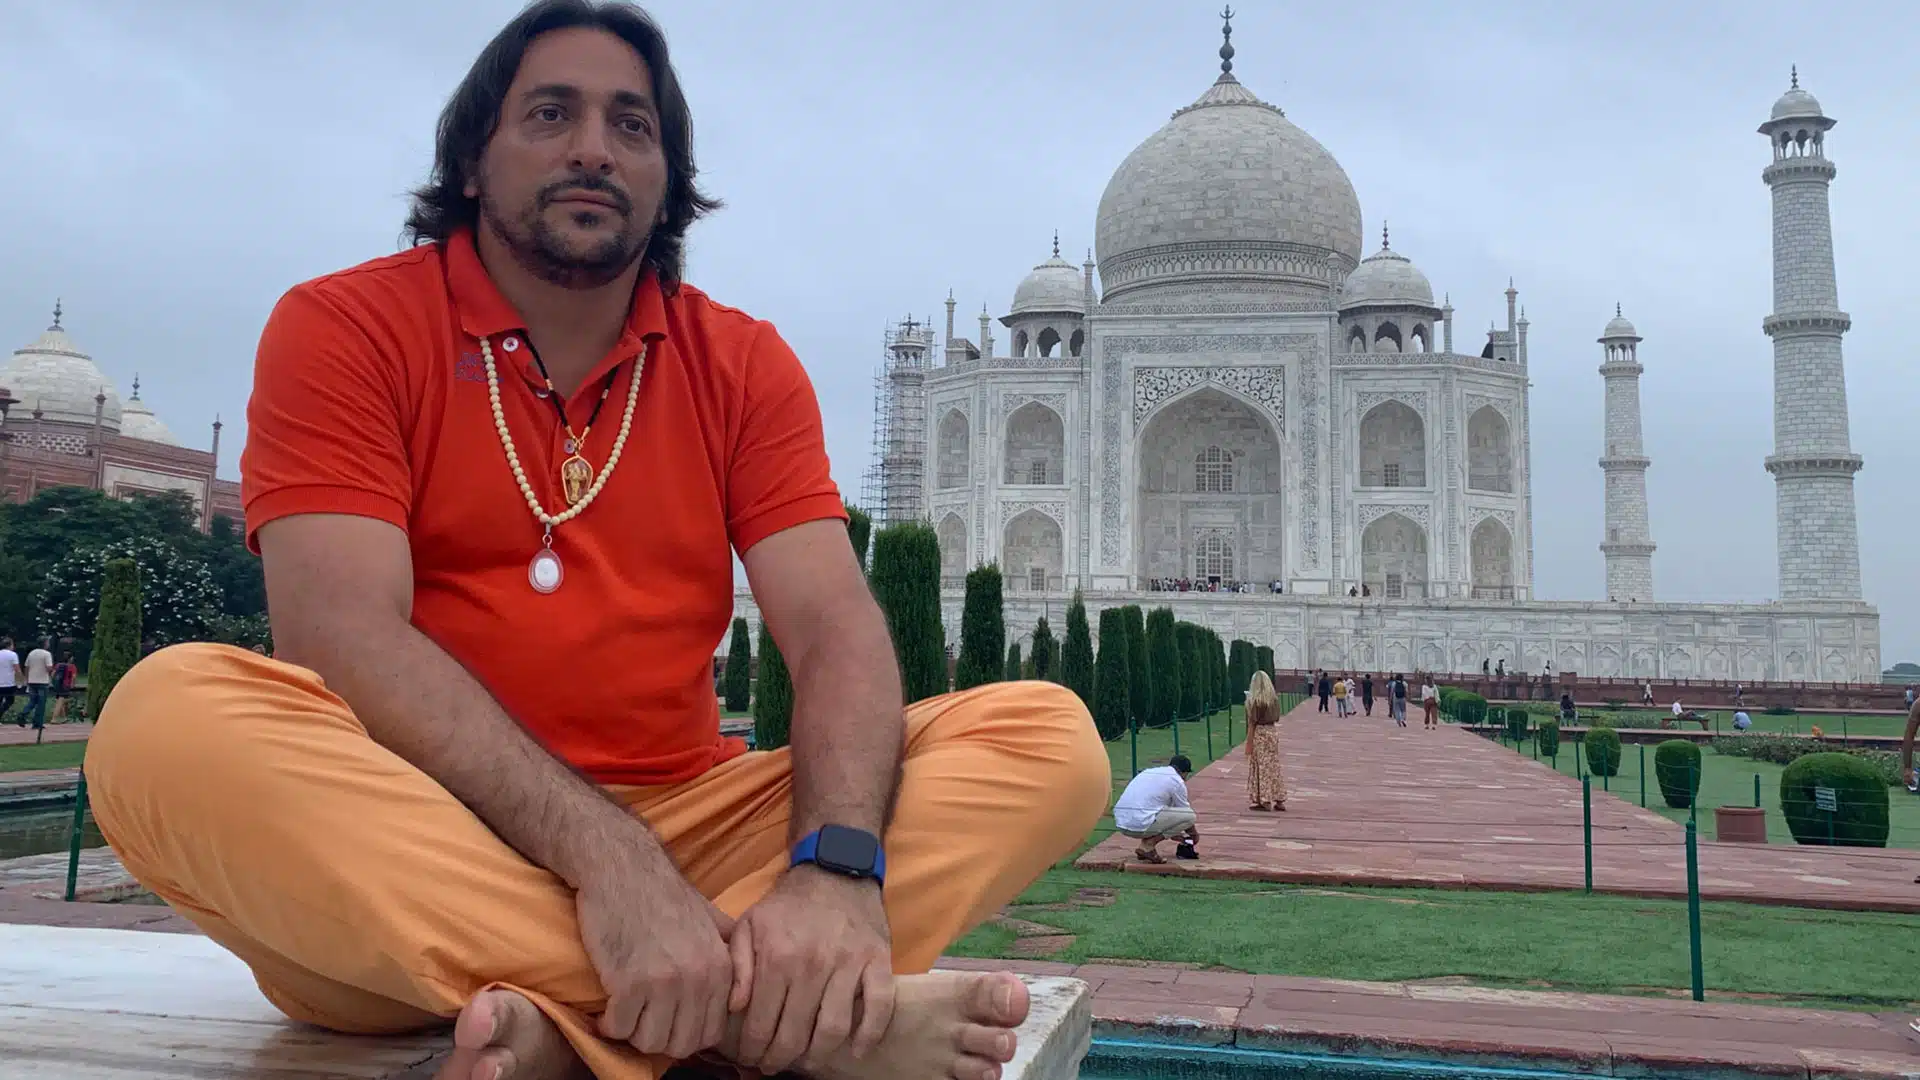 Swami Amrirananda Giri (Davide R. Diesi) foto nel giardino del Taj Mahal | AGRA 2019